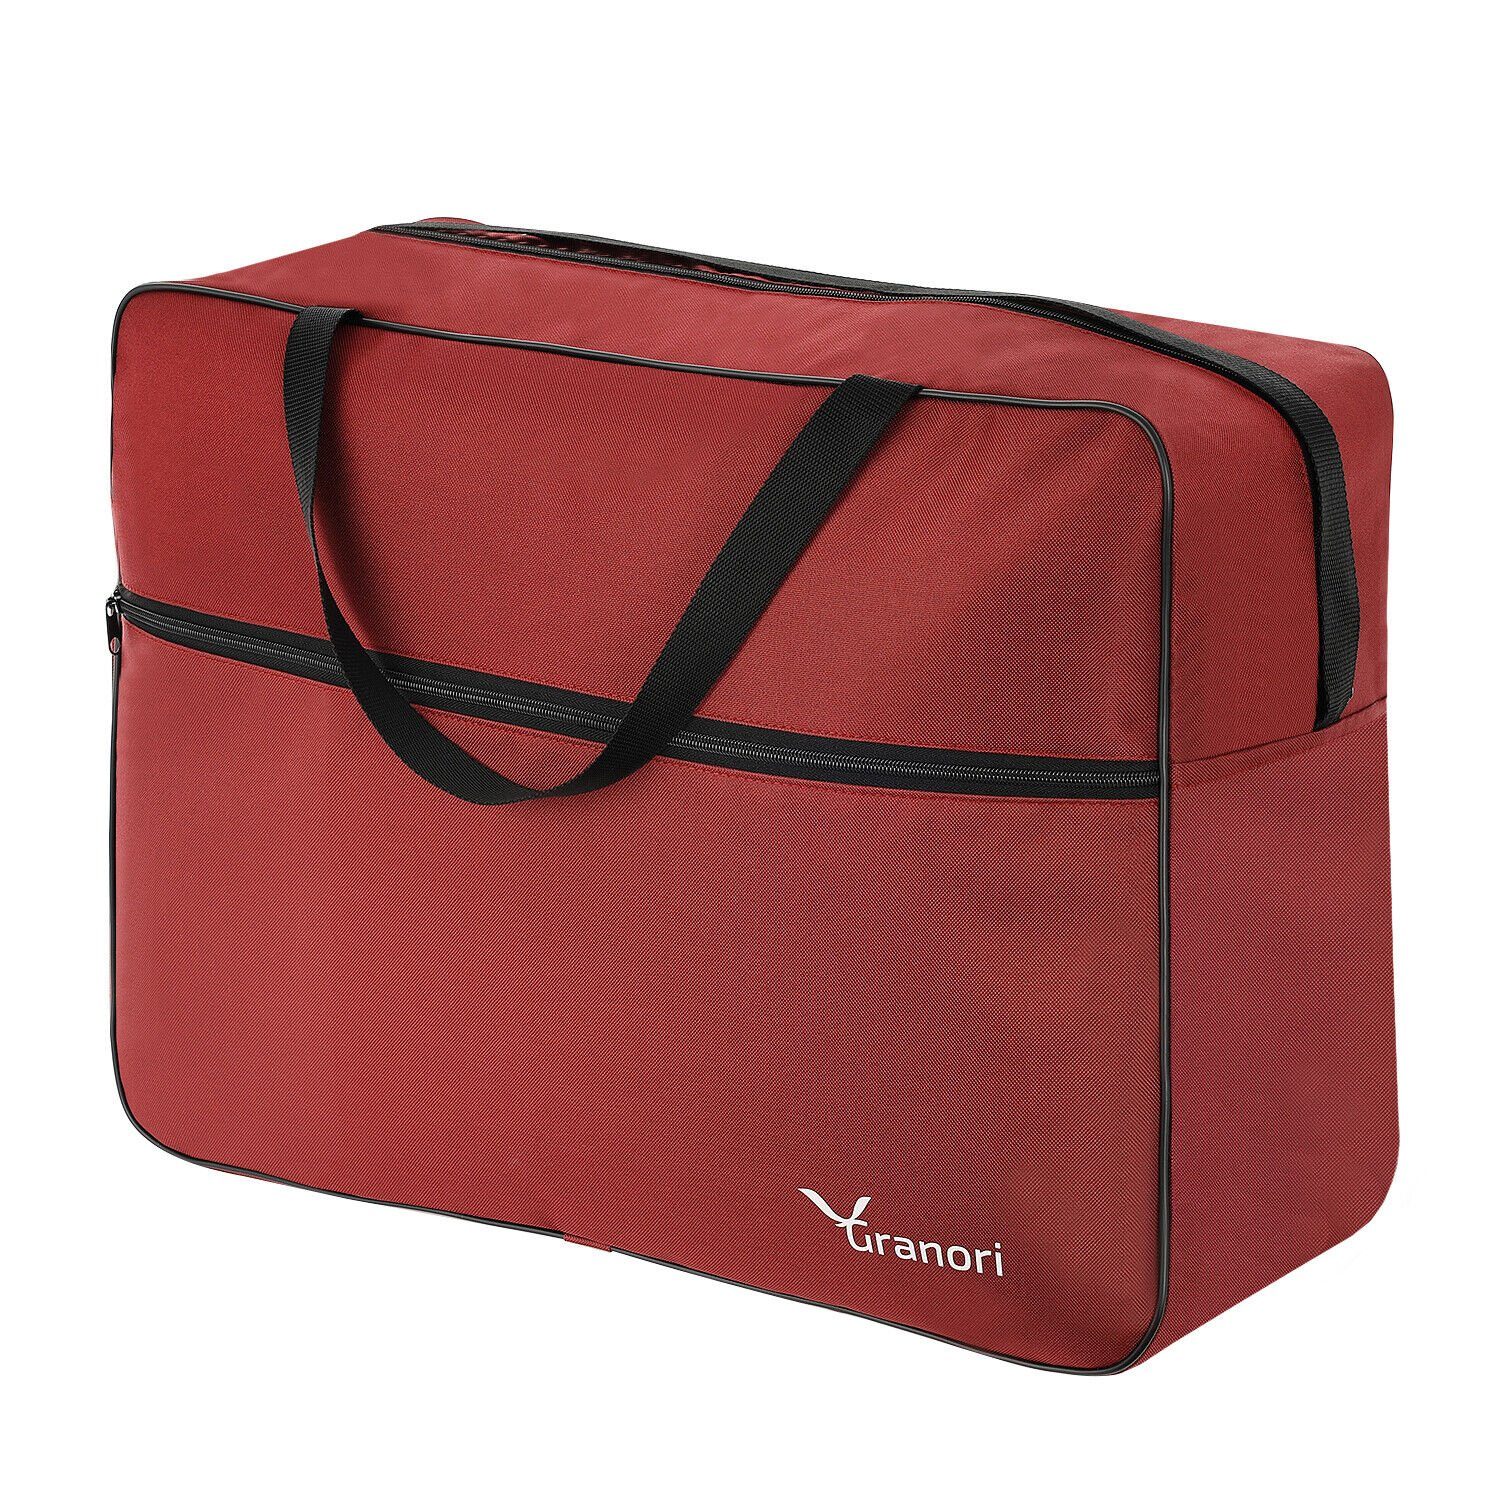 55x40x20 cm 40 Flugzeug-Kabinengepäck Granori Platz entspricht leicht Empfehlungen (über Fassungsvermögen), viel Rot Schultergurt IATA Handgepäck – l für großes Reisetasche mit &